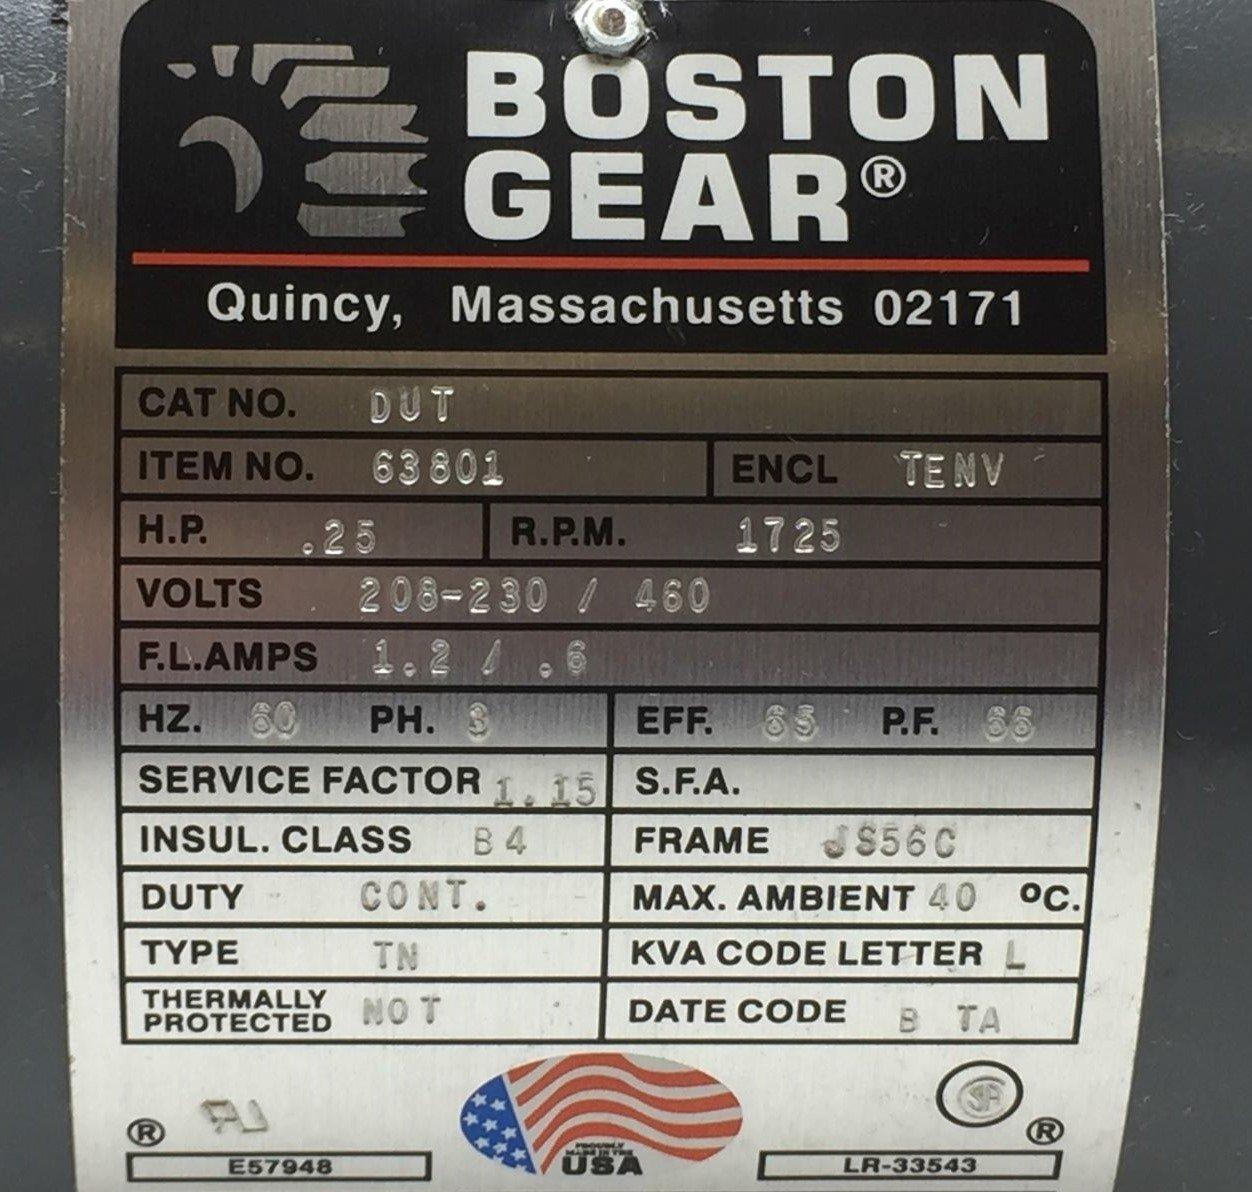 Boston Gear 63801 AC Motor JS56C Frame 